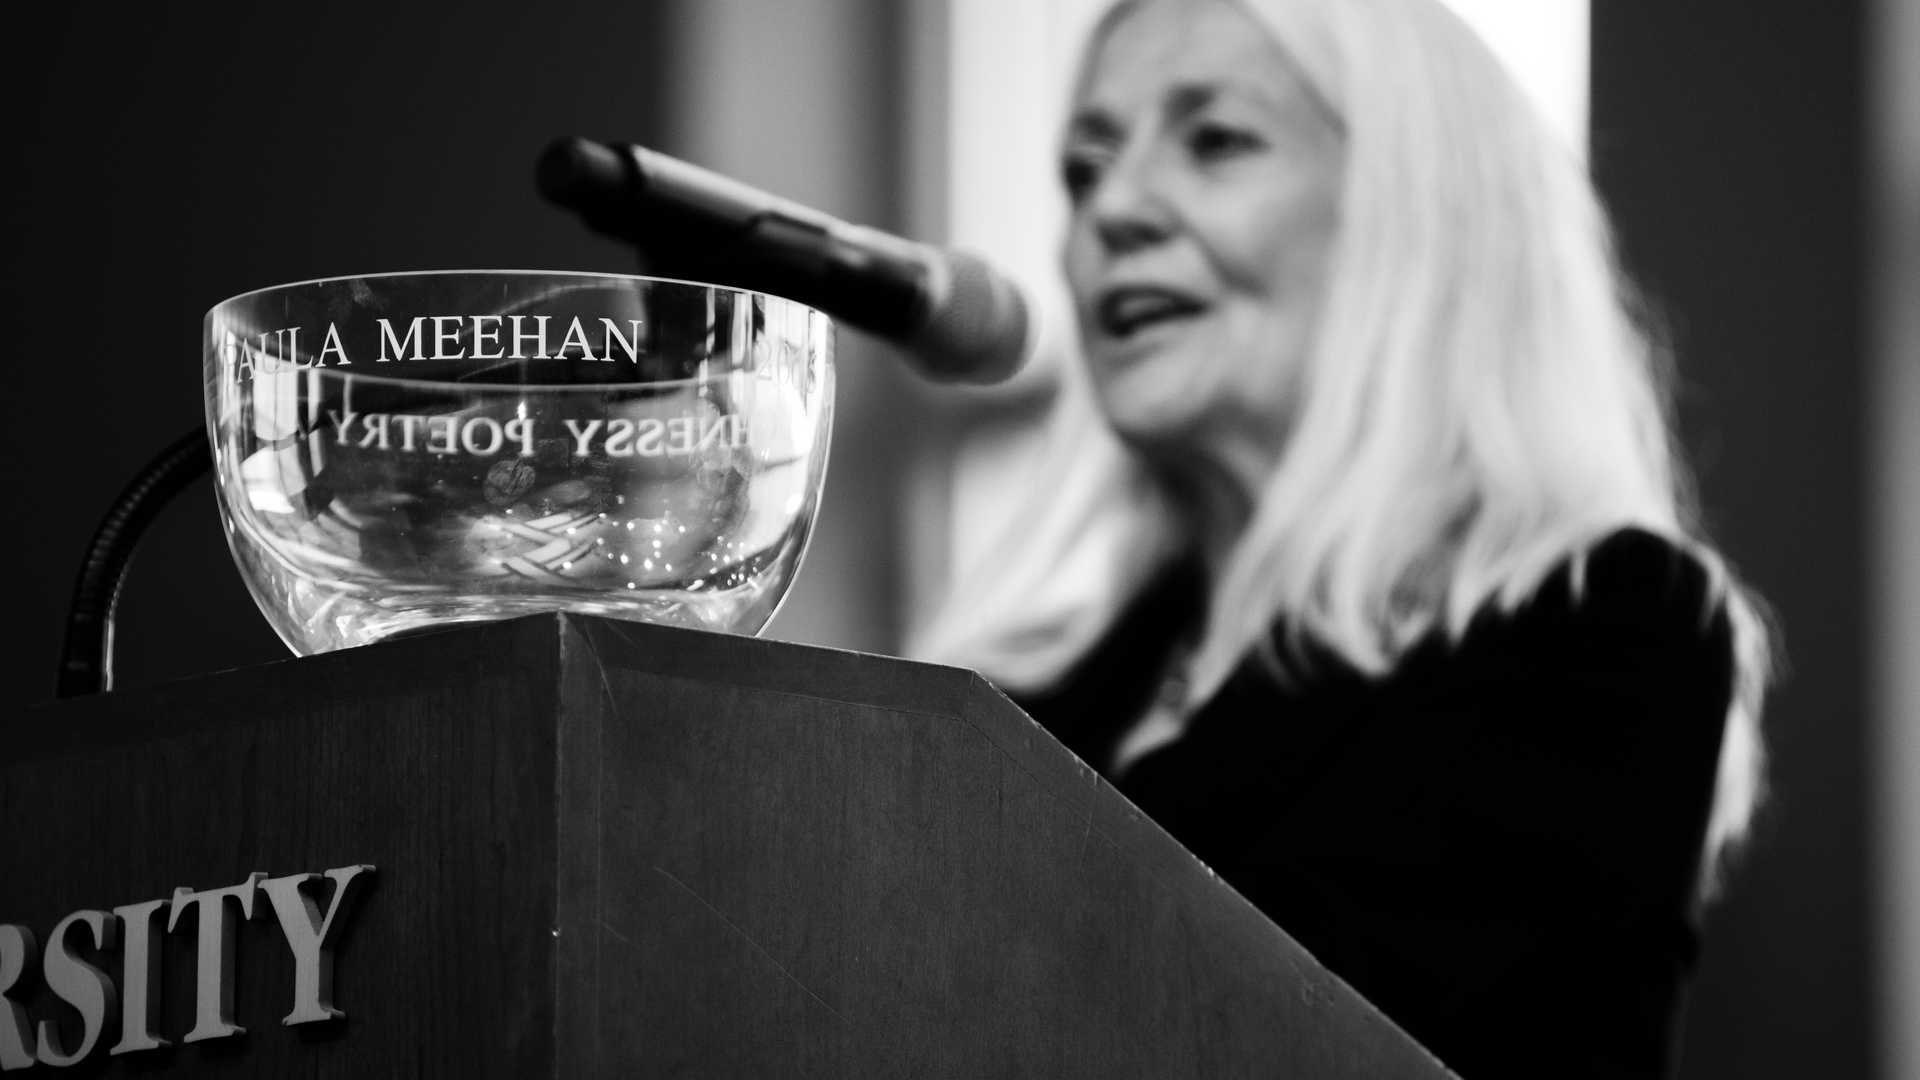 Paula Meehanaccepts award at the Irish Poetry Society Reception. 